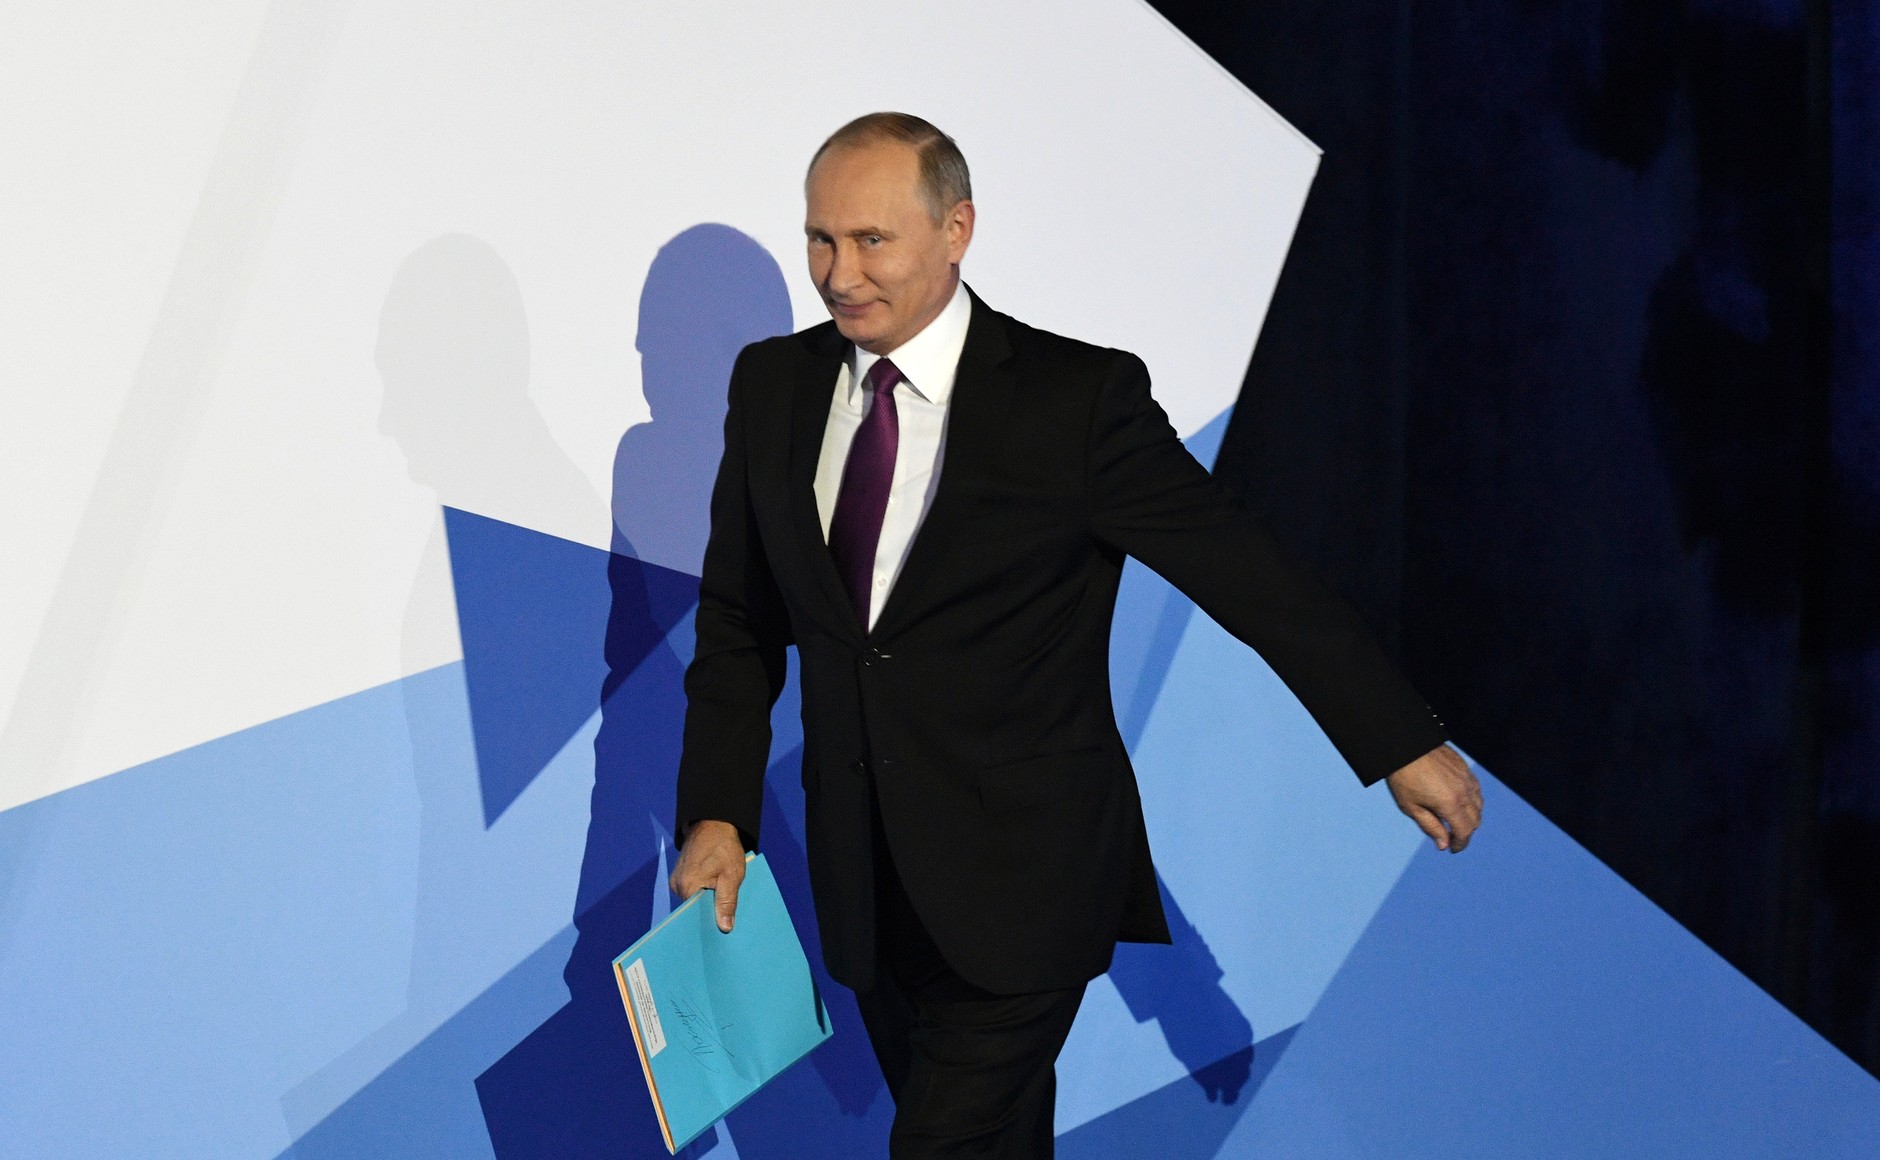 ​"Придется пересесть на "Ладу"", - "юморист" Путин выдал странный анекдот в ответ на неловкий вопрос о собственном будущем